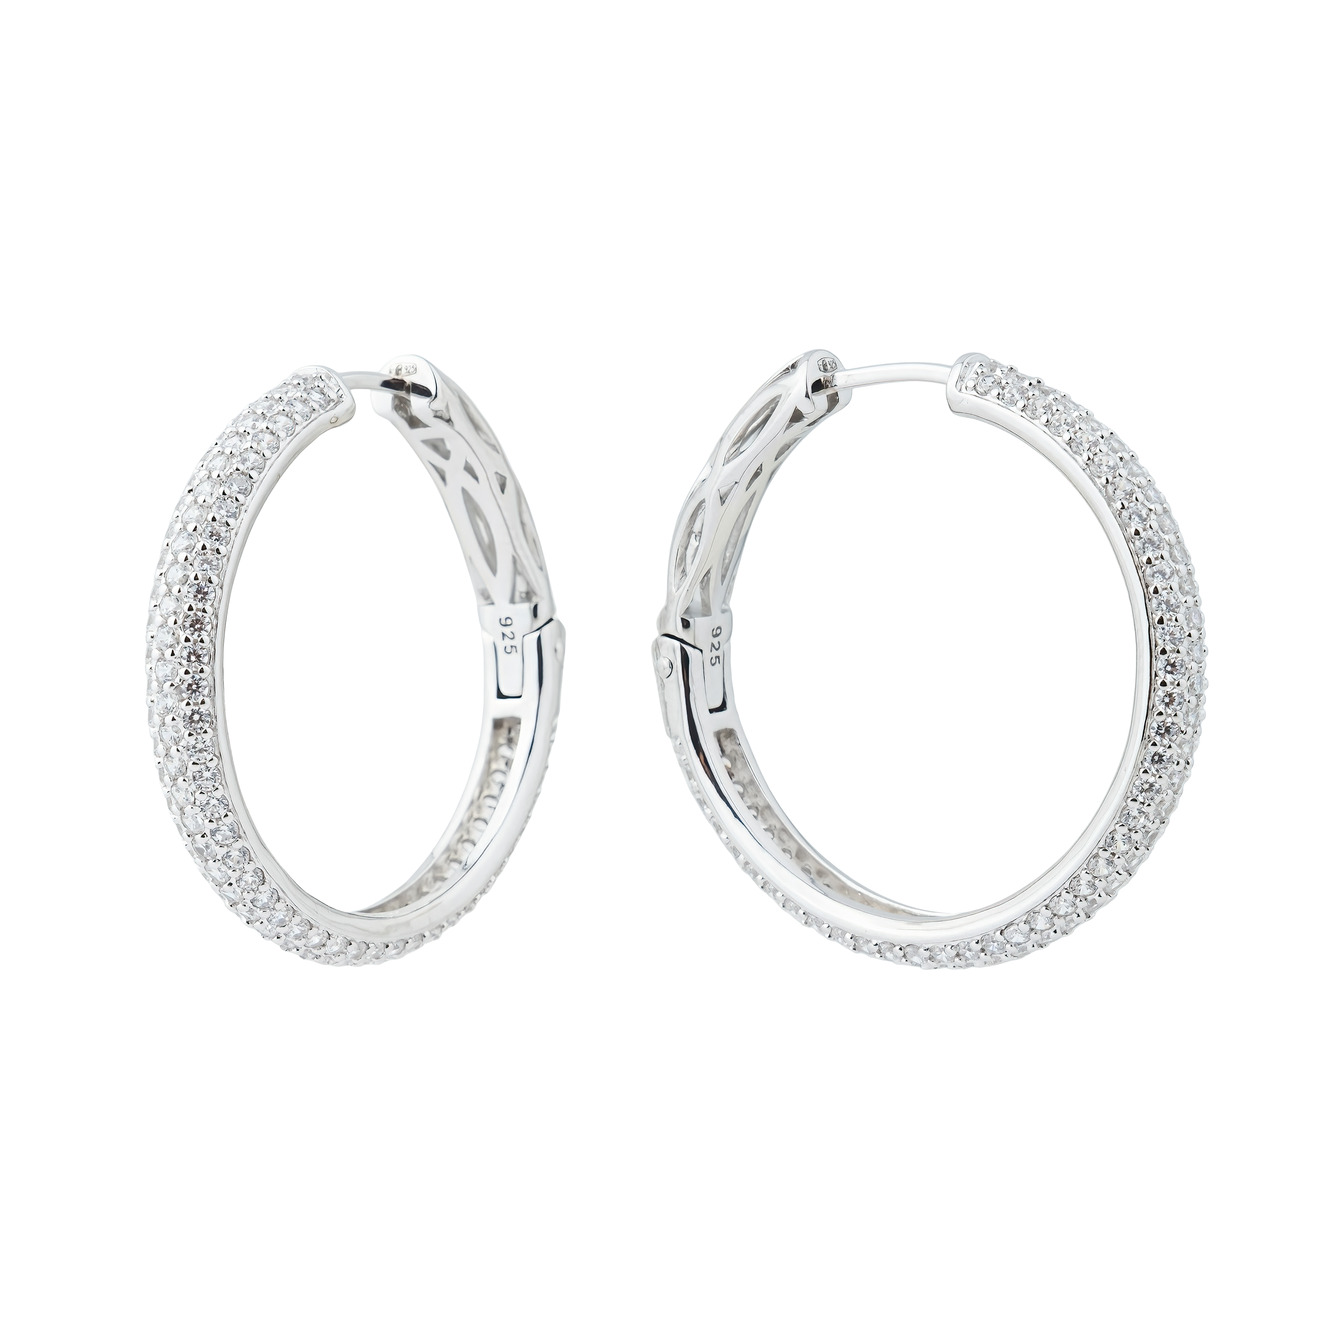 Holy Silver Серебристые серьги-кольца, покрытые белыми кристаллами фотографии